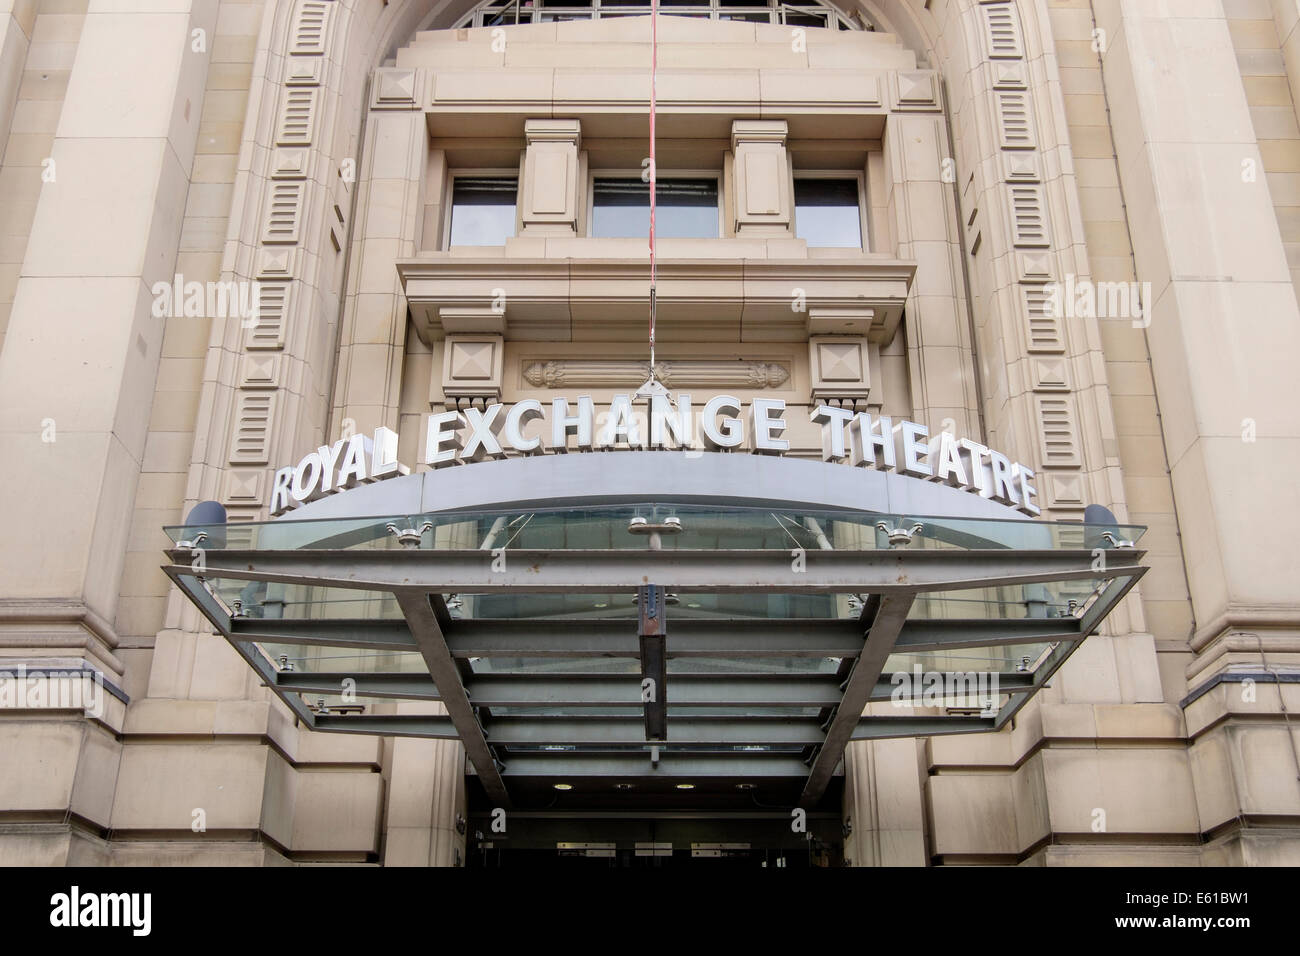 Nome segno sopra la porta ingresso al Royal Exchange Theatre a Manchester in Inghilterra, Regno Unito, Gran Bretagna Foto Stock